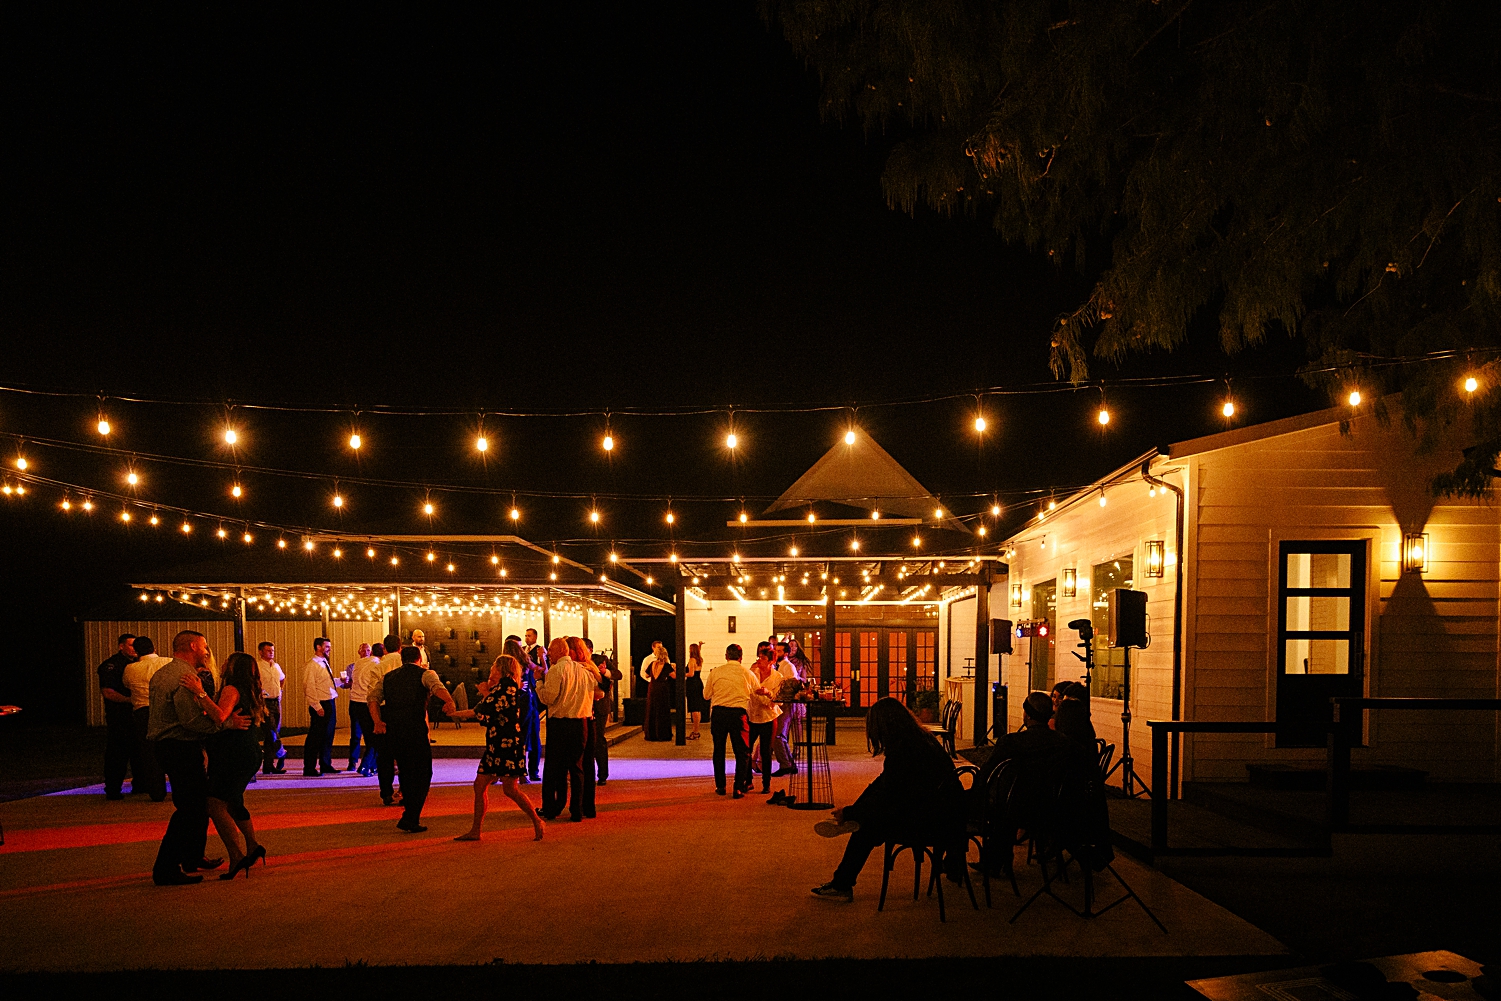 outdoor patio night dancing wedding reception Emerson venue orange lights